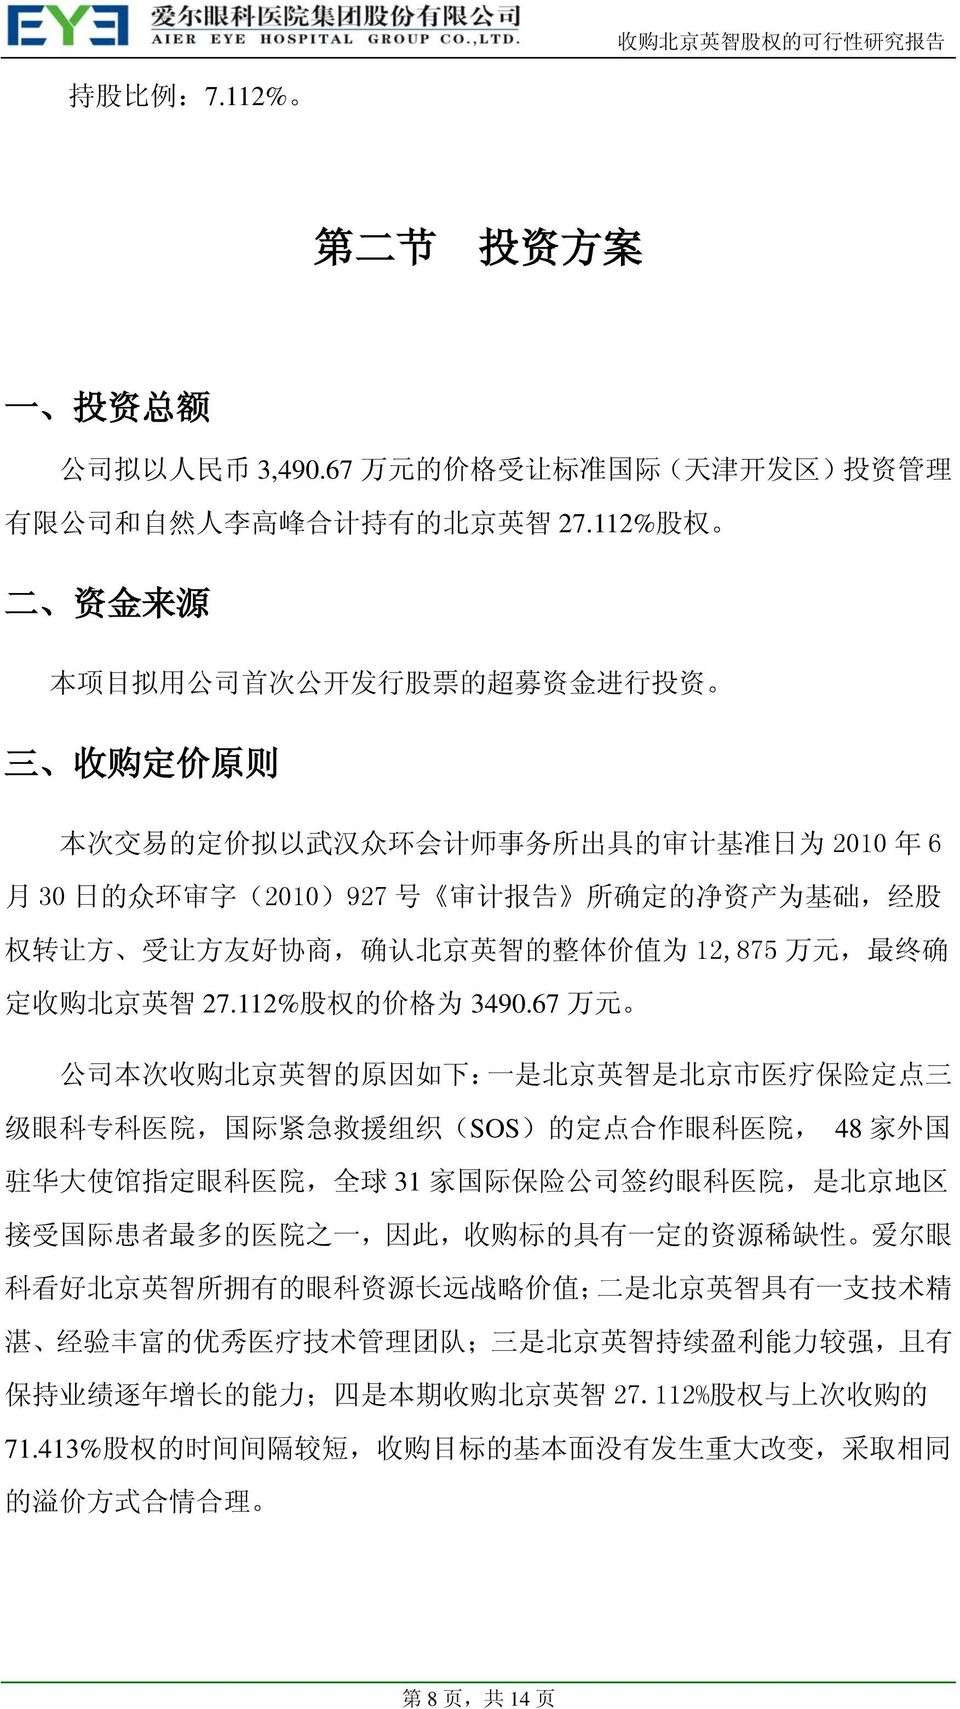 基 础, 经 股 权 转 让 方 受 让 方 友 好 协 商, 确 认 北 京 英 智 的 整 体 价 值 为 12,875 万 元, 最 终 确 定 收 购 北 京 英 智 27.112% 股 权 的 价 格 为 3490.